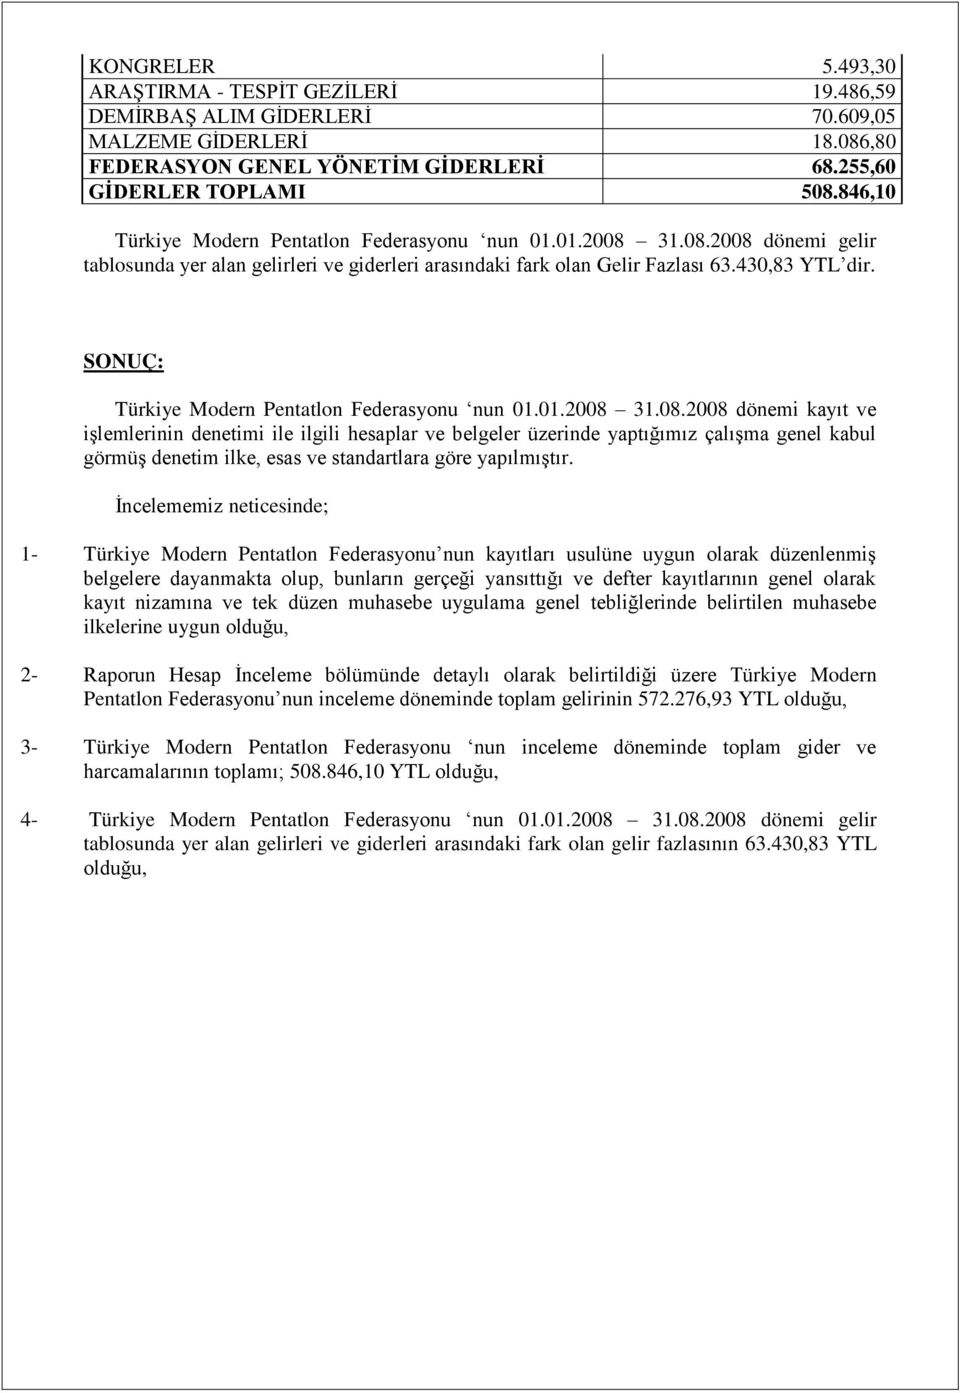 SONUÇ: Türkiye Modern Pentatlon Federasyonu nun 01.01.2008 